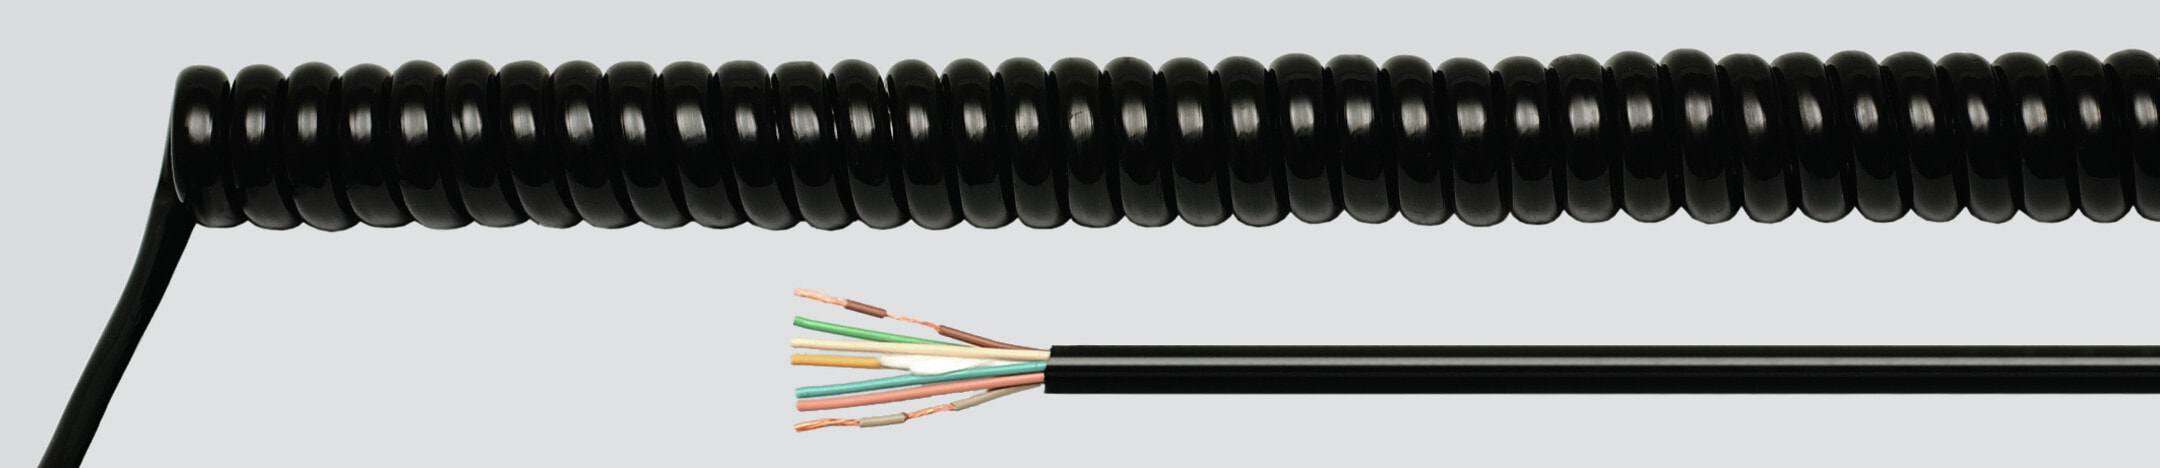 Helukabel 86420 - Low voltage cable - Black - Cooper - 1 mm² - 964.8 kg/km - -25 - 70 °C